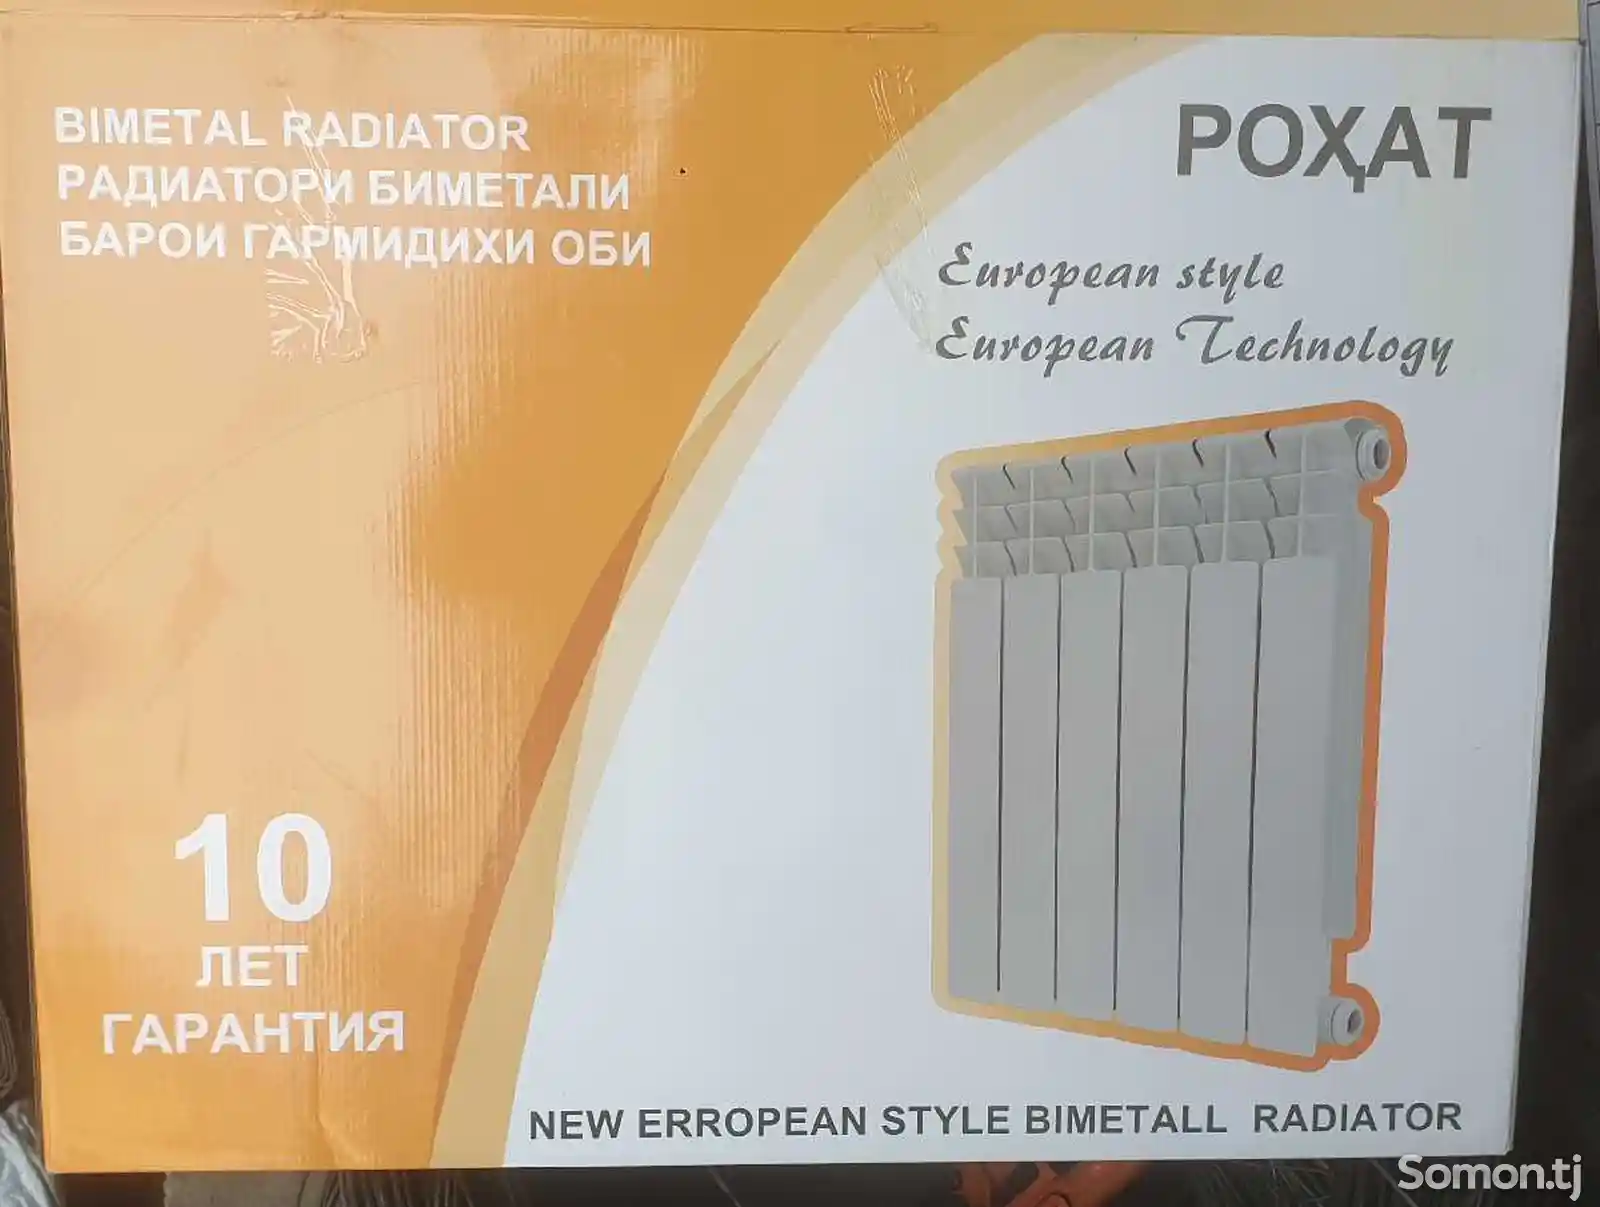 Биметаллический радиатор роxат-4